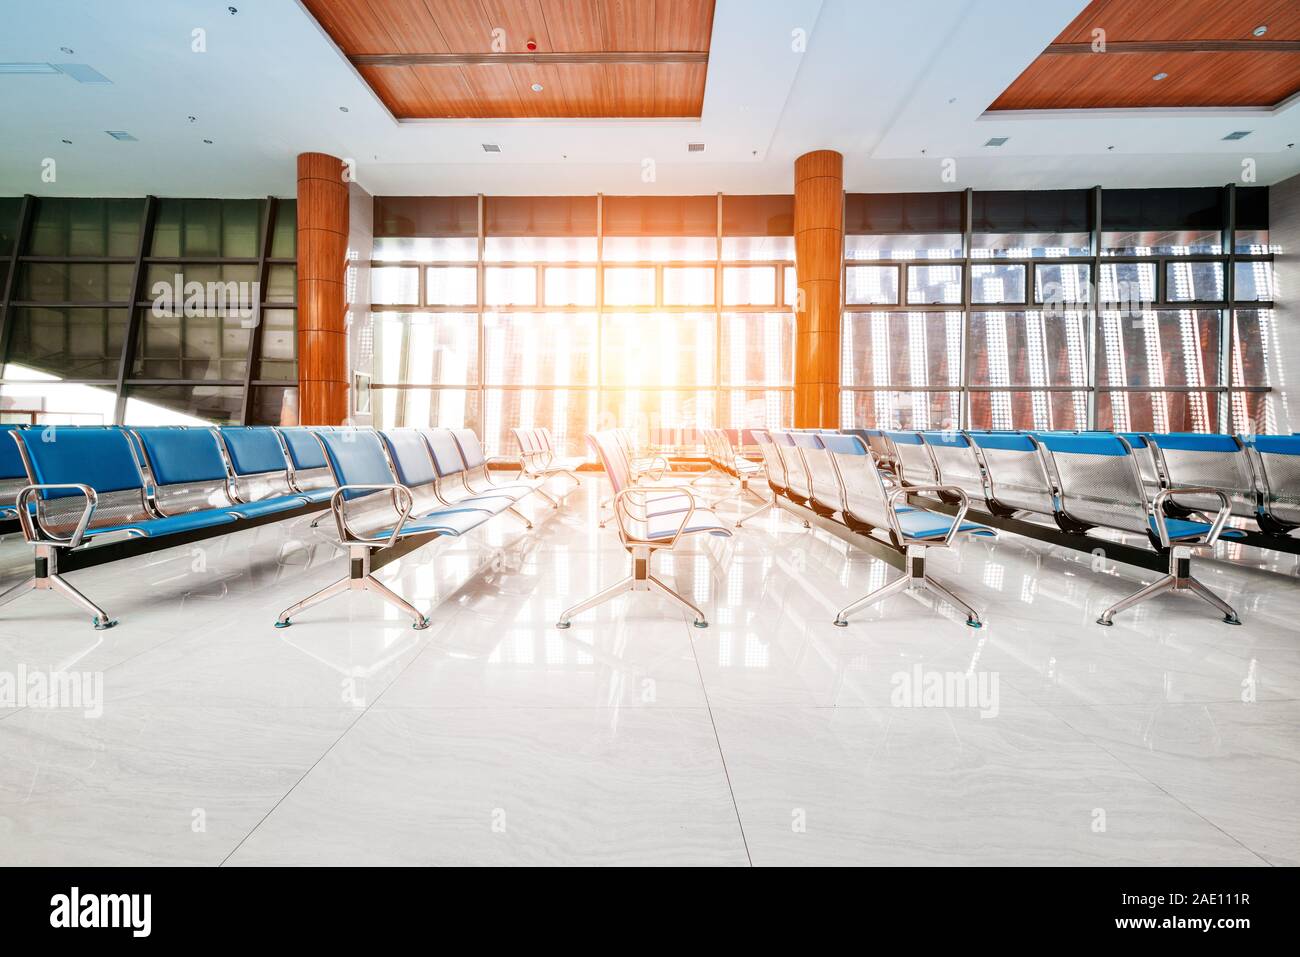 Una imagen de una nueva sala de embarque en el aeropuerto. Foto de stock